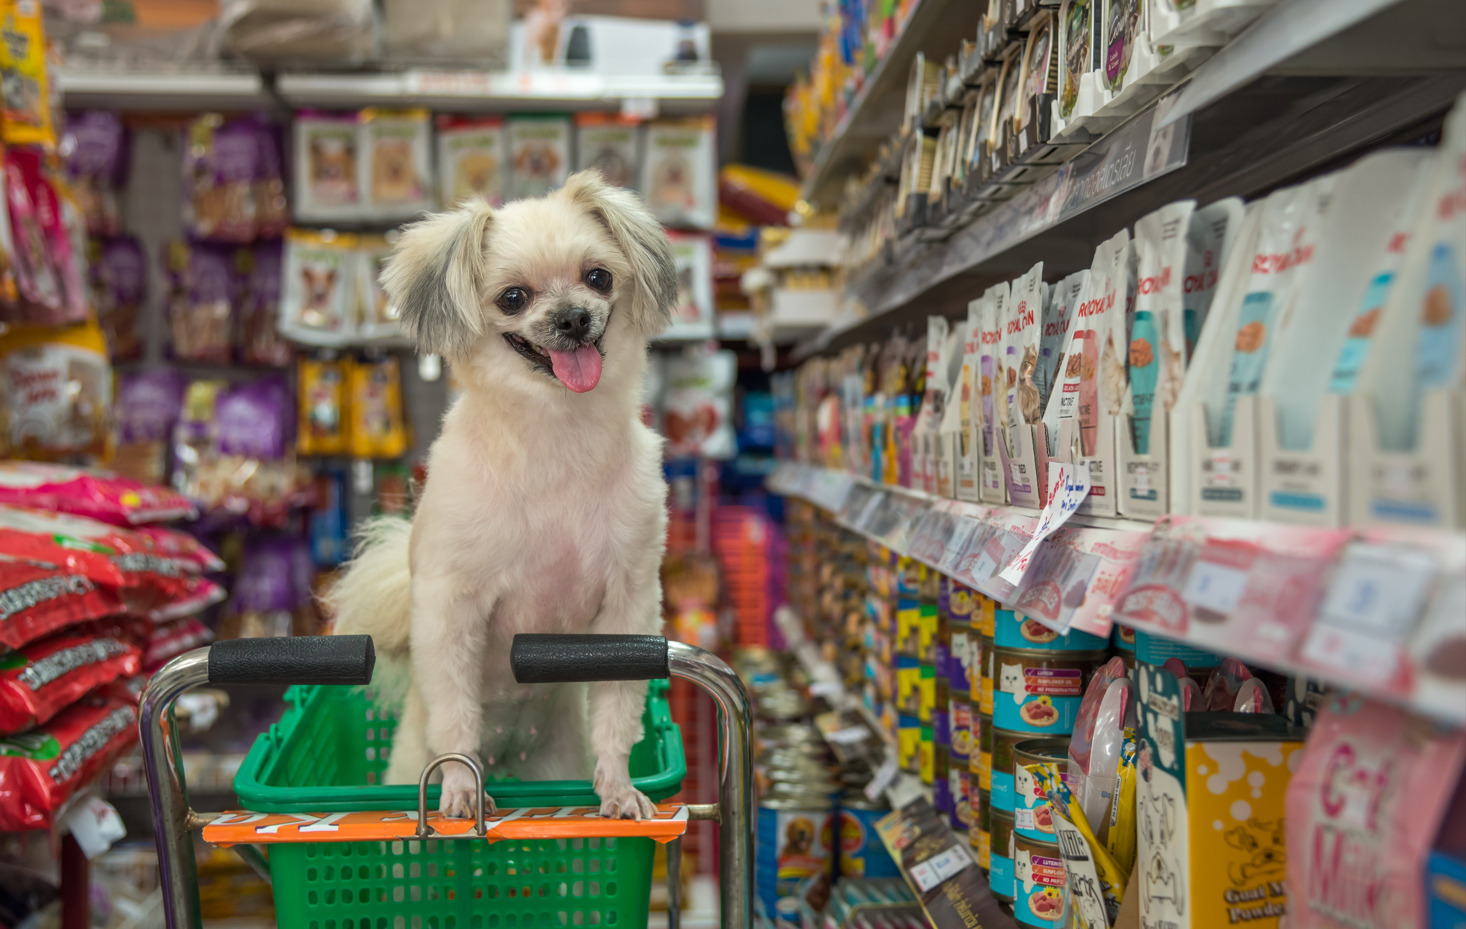 Cani possono entrare nei supermercati – finalmente il sì dal Ministero Salute